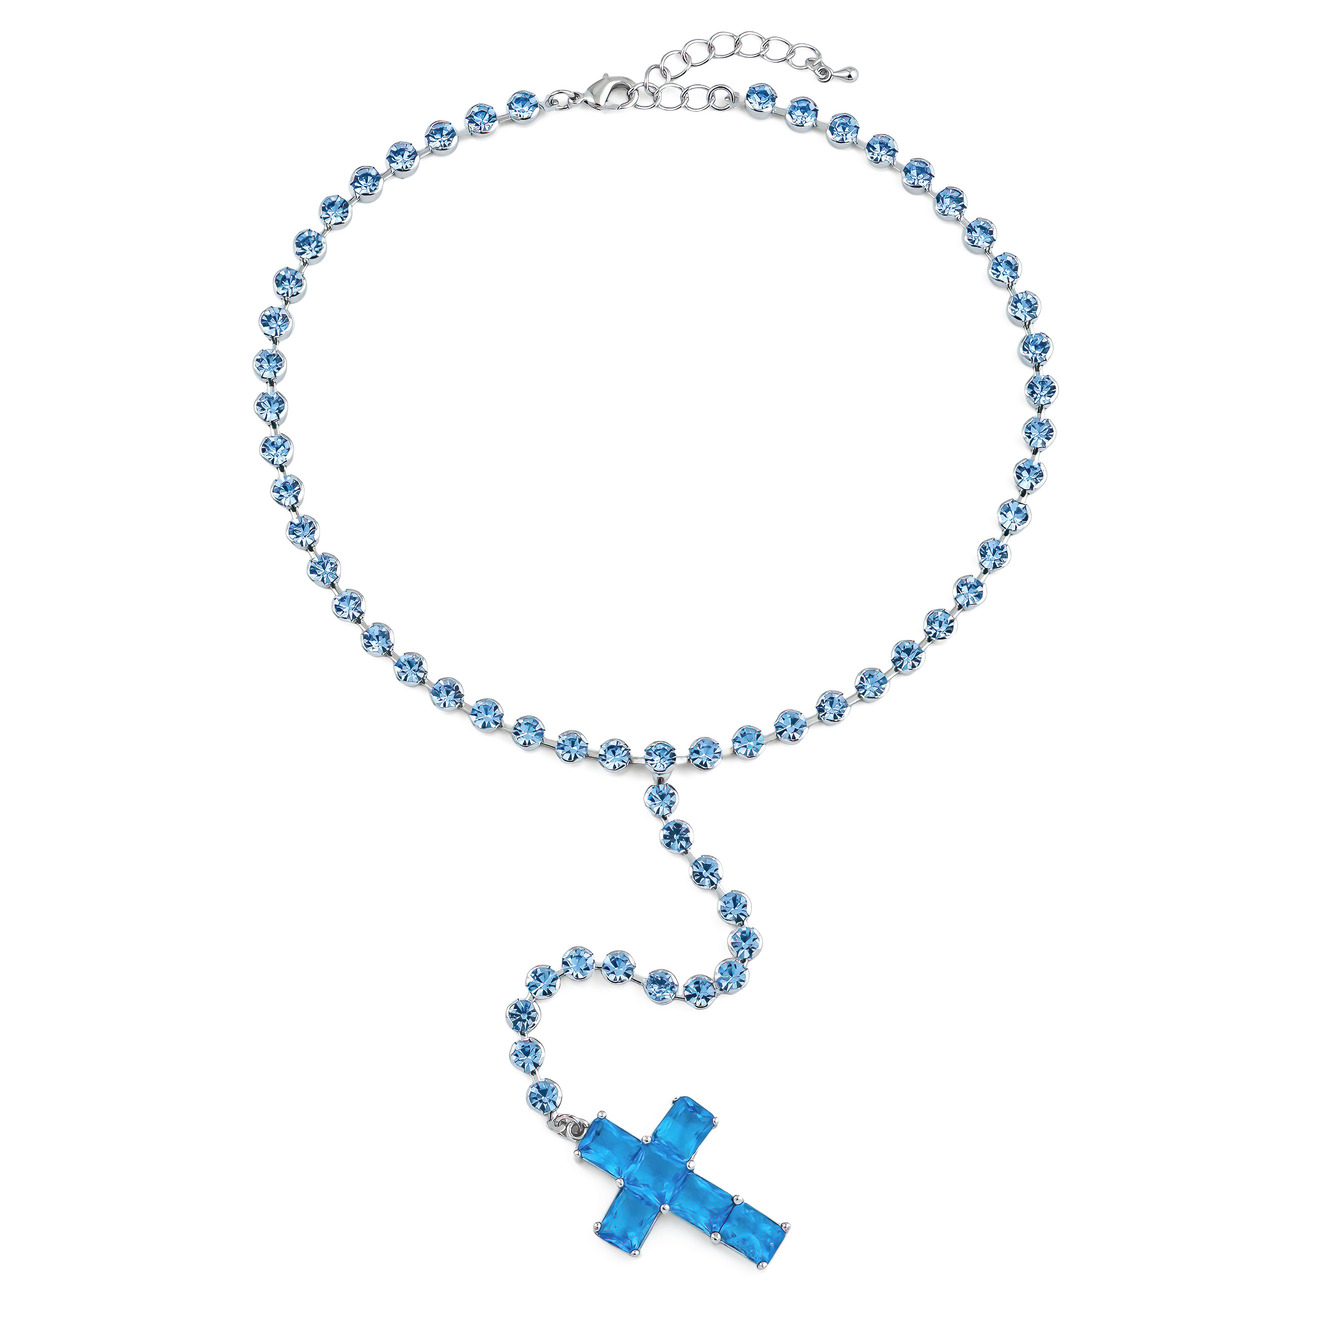 Herald Percy Серебристое колье-галстук с голубыми кристаллами в виде креста